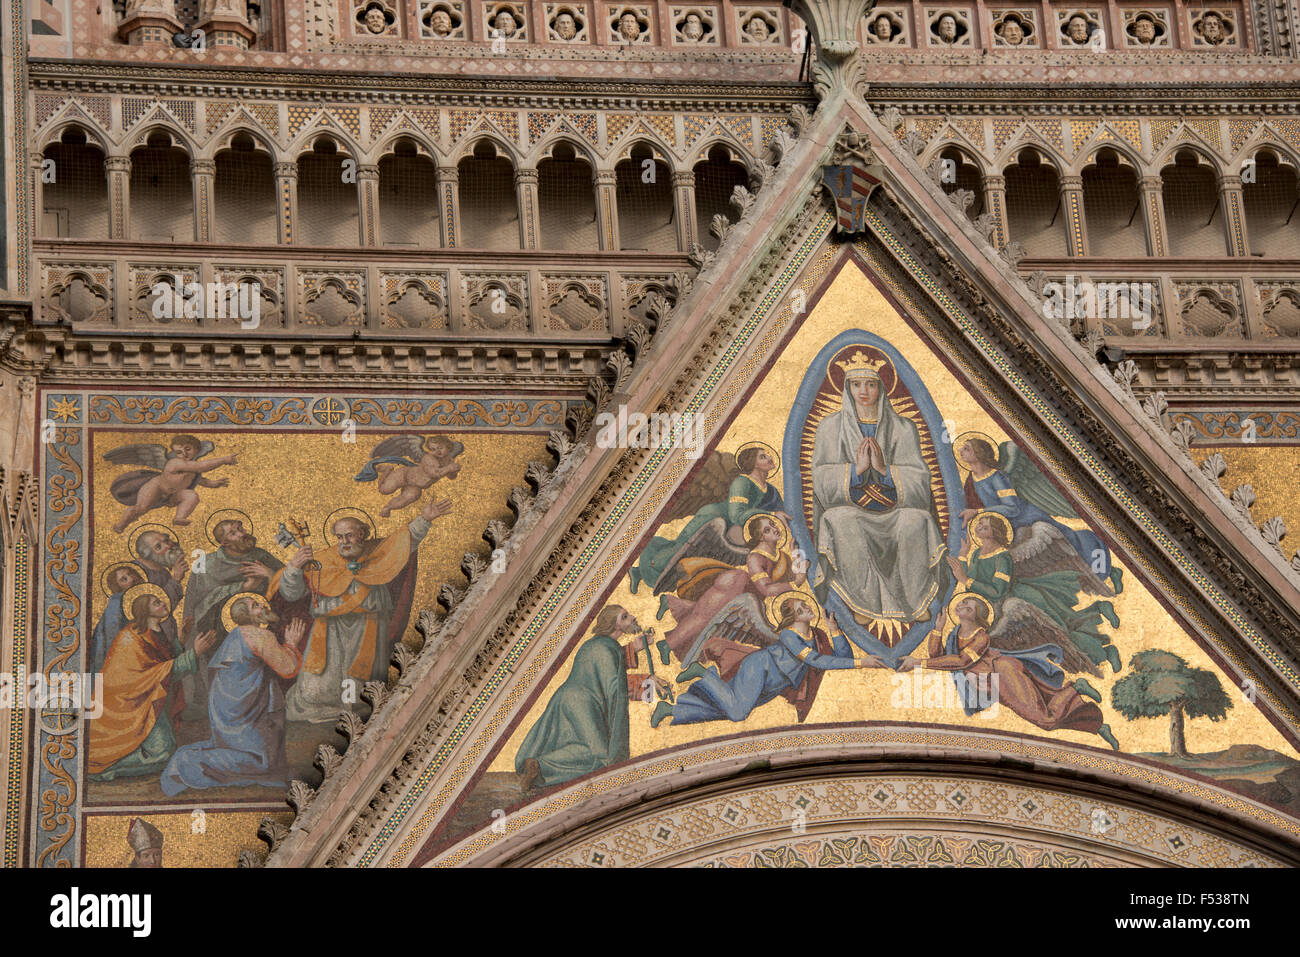 Italien, Umbrien, Orvieto. Die Kathedrale von Orvieto oder Dom von Orvieto. 13. Jahrhundert gotische Meisterwerk, eines der besten gotischen Bauwerke in Italien. Detail der Fassade mit religiösen Mosaik. Stockfoto